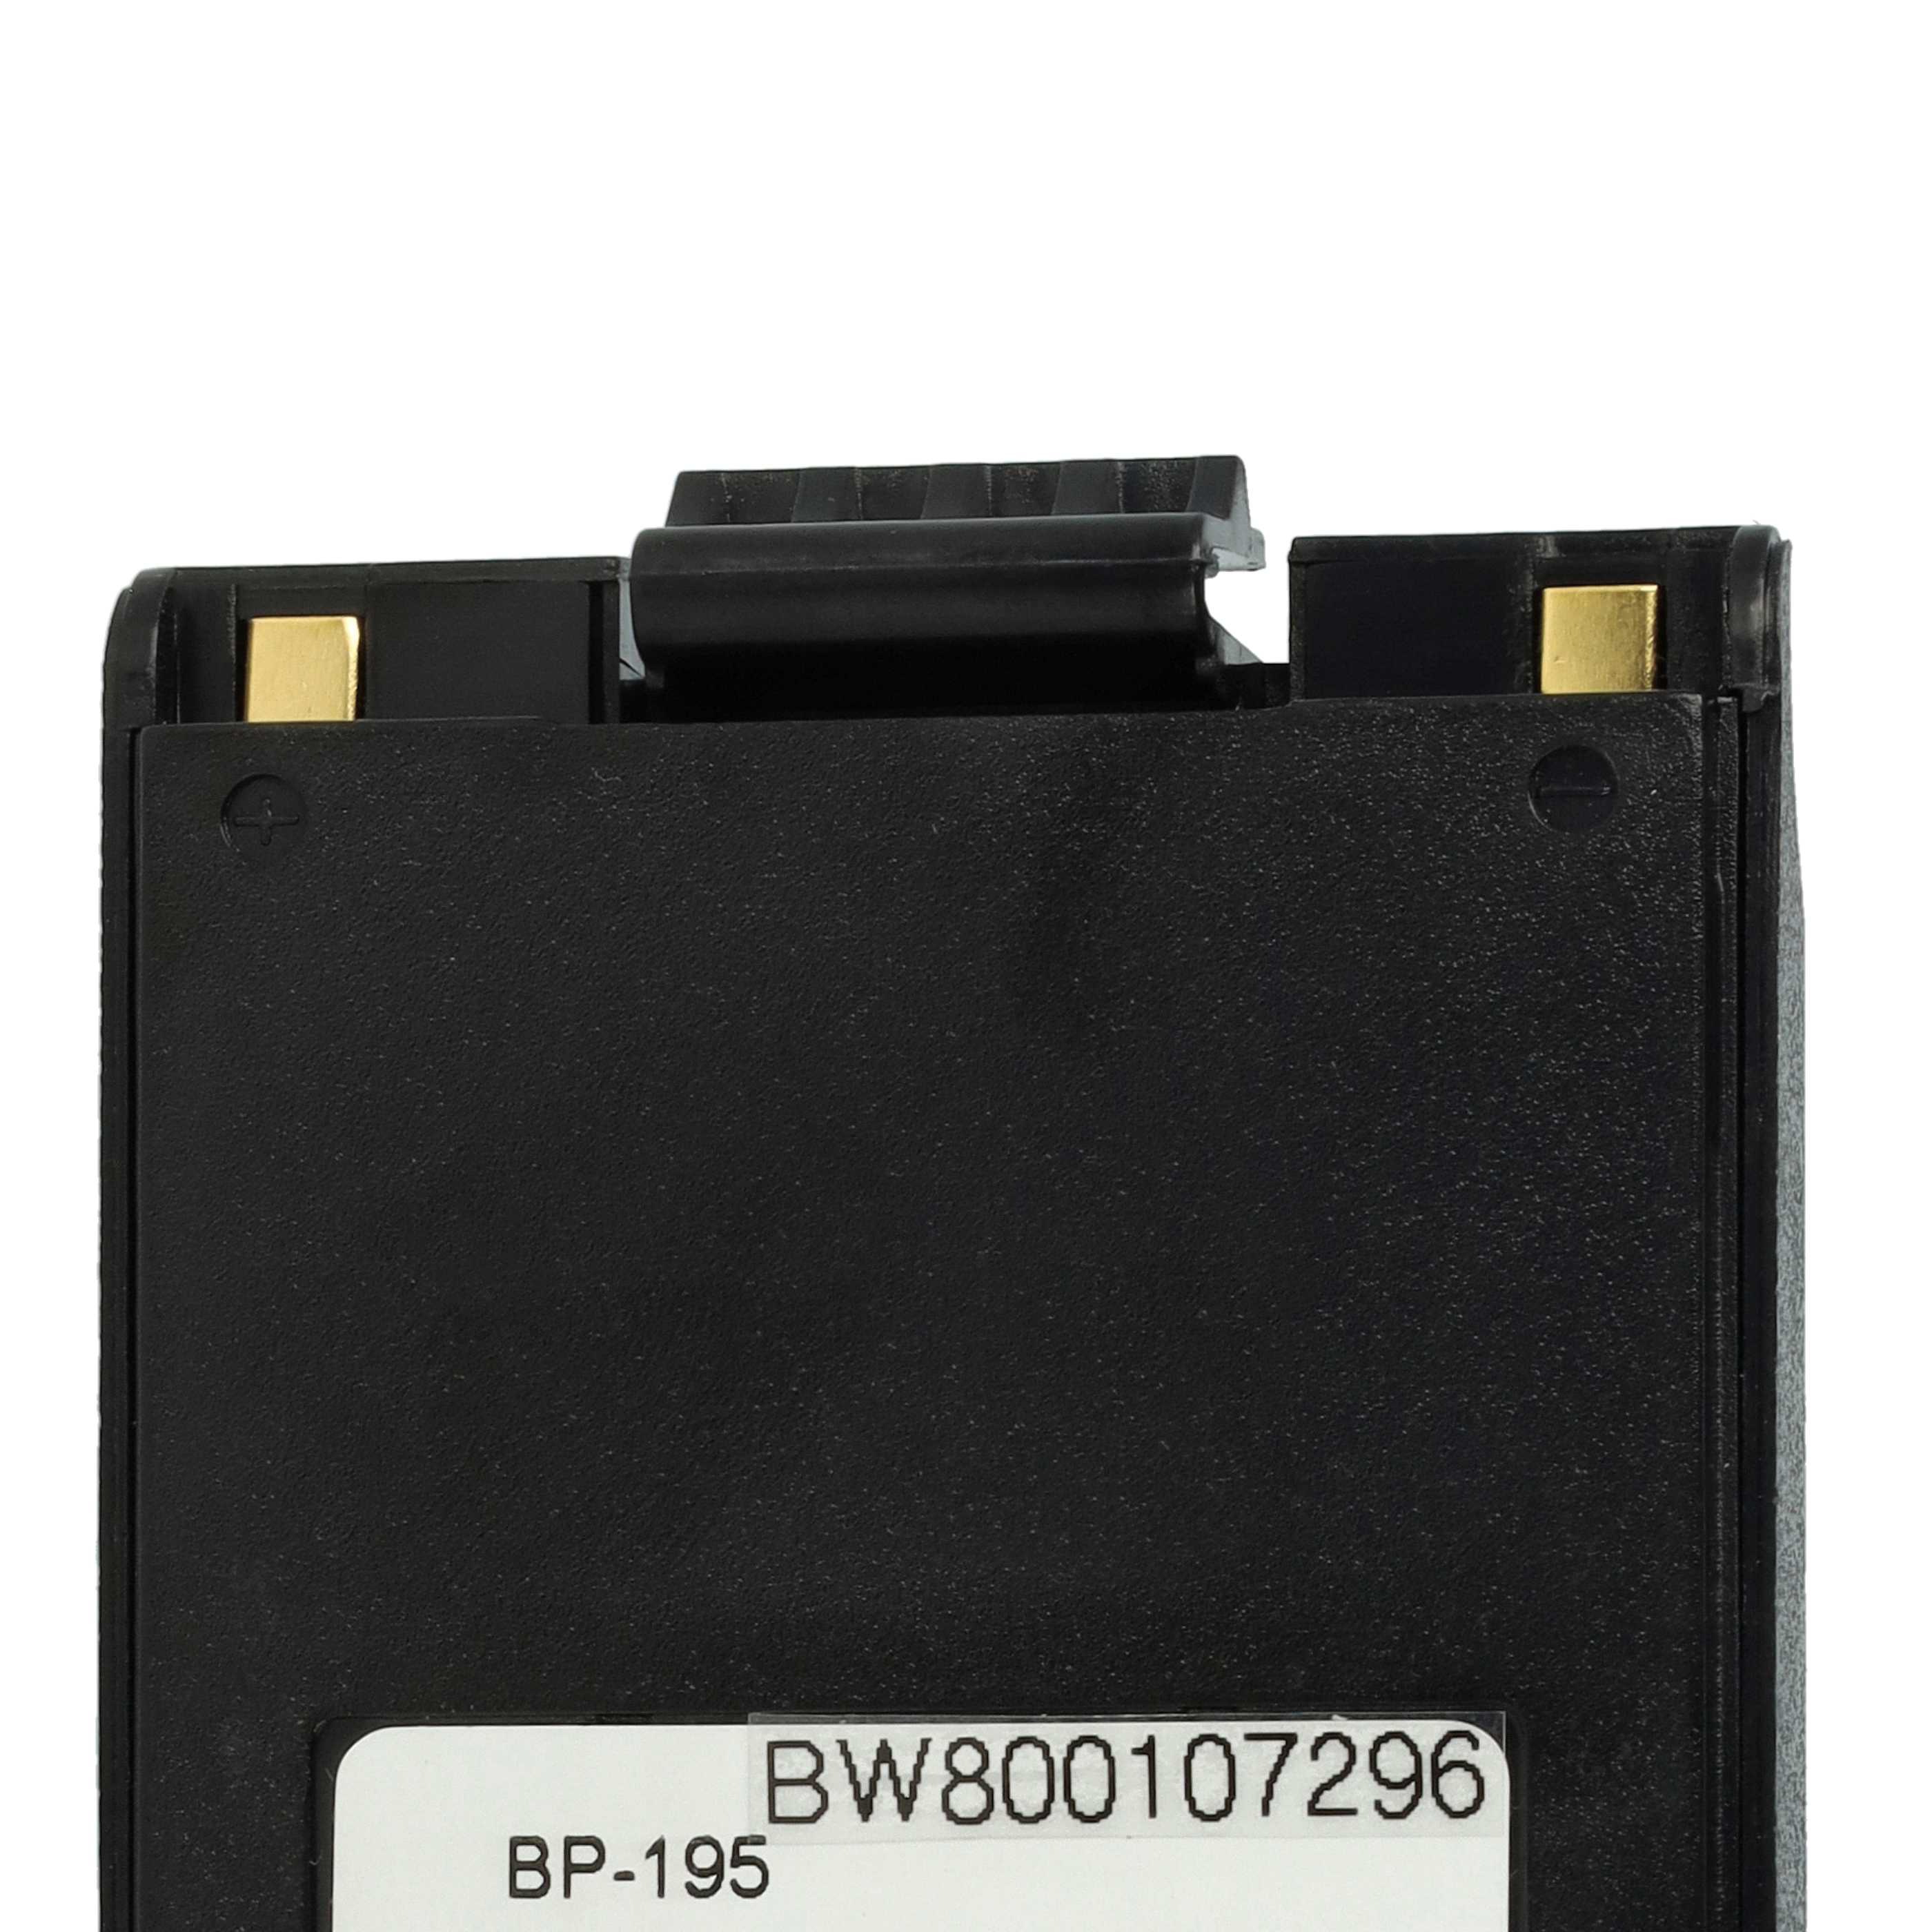 Akumulator do radiotelefonu zamiennik Icom BP-195, BP-196H, BP-196 - 2500 mAh 9,6 V NiMH + klips na pasek